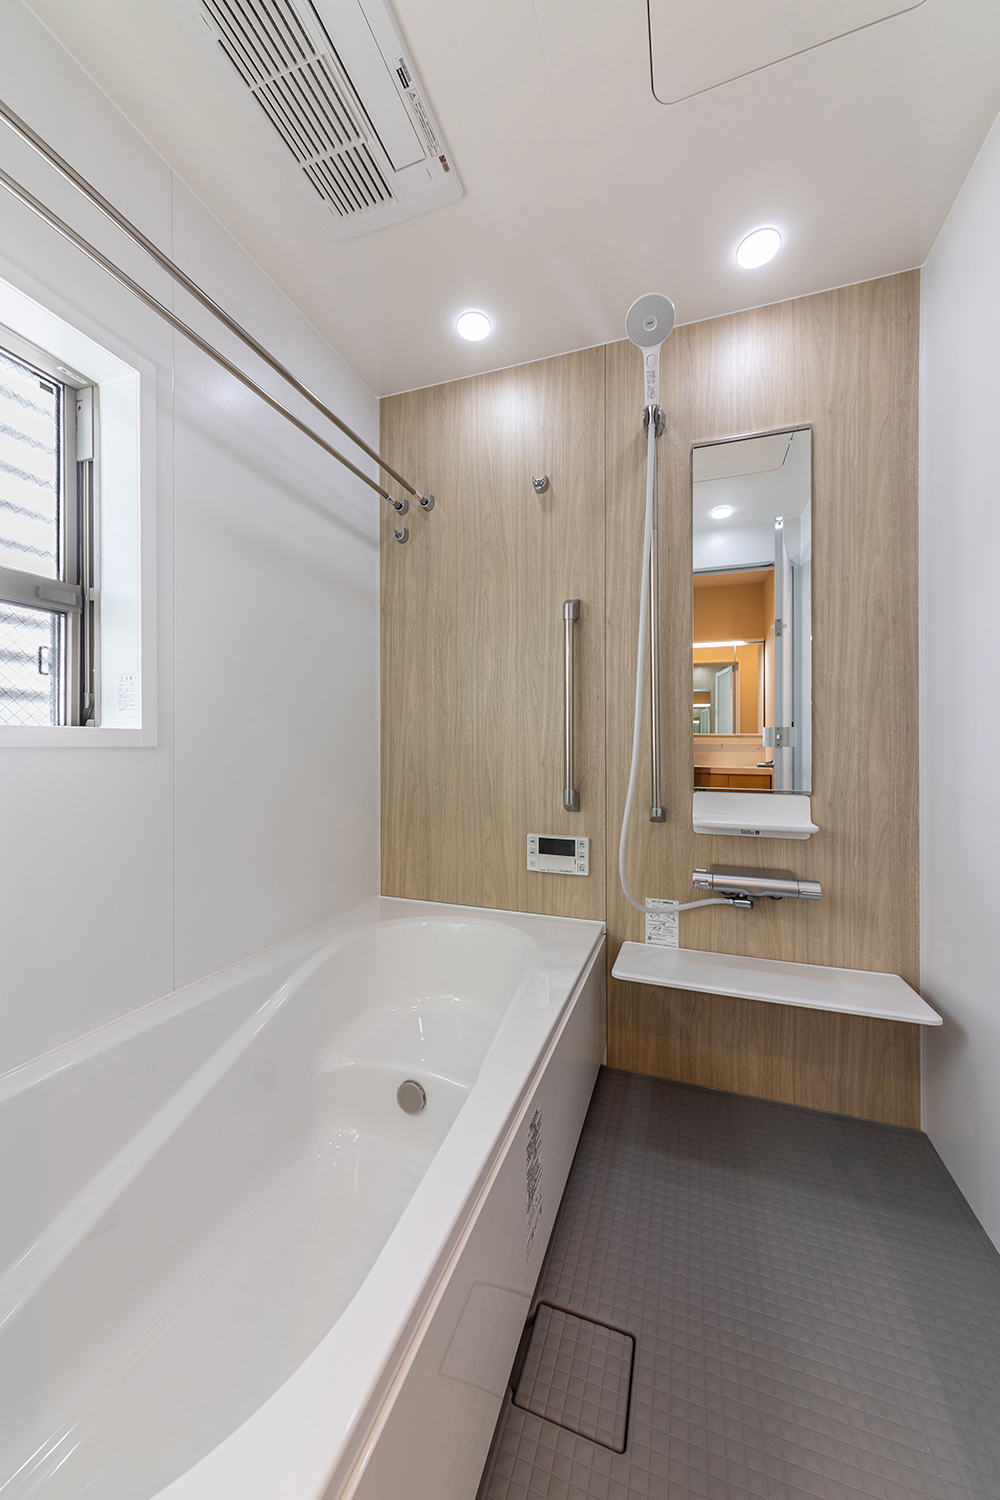 T-2／ワイドサイズのバスタブをセットした快適な浴室。シェルフはマグネットタイプでお掃除も楽々です！